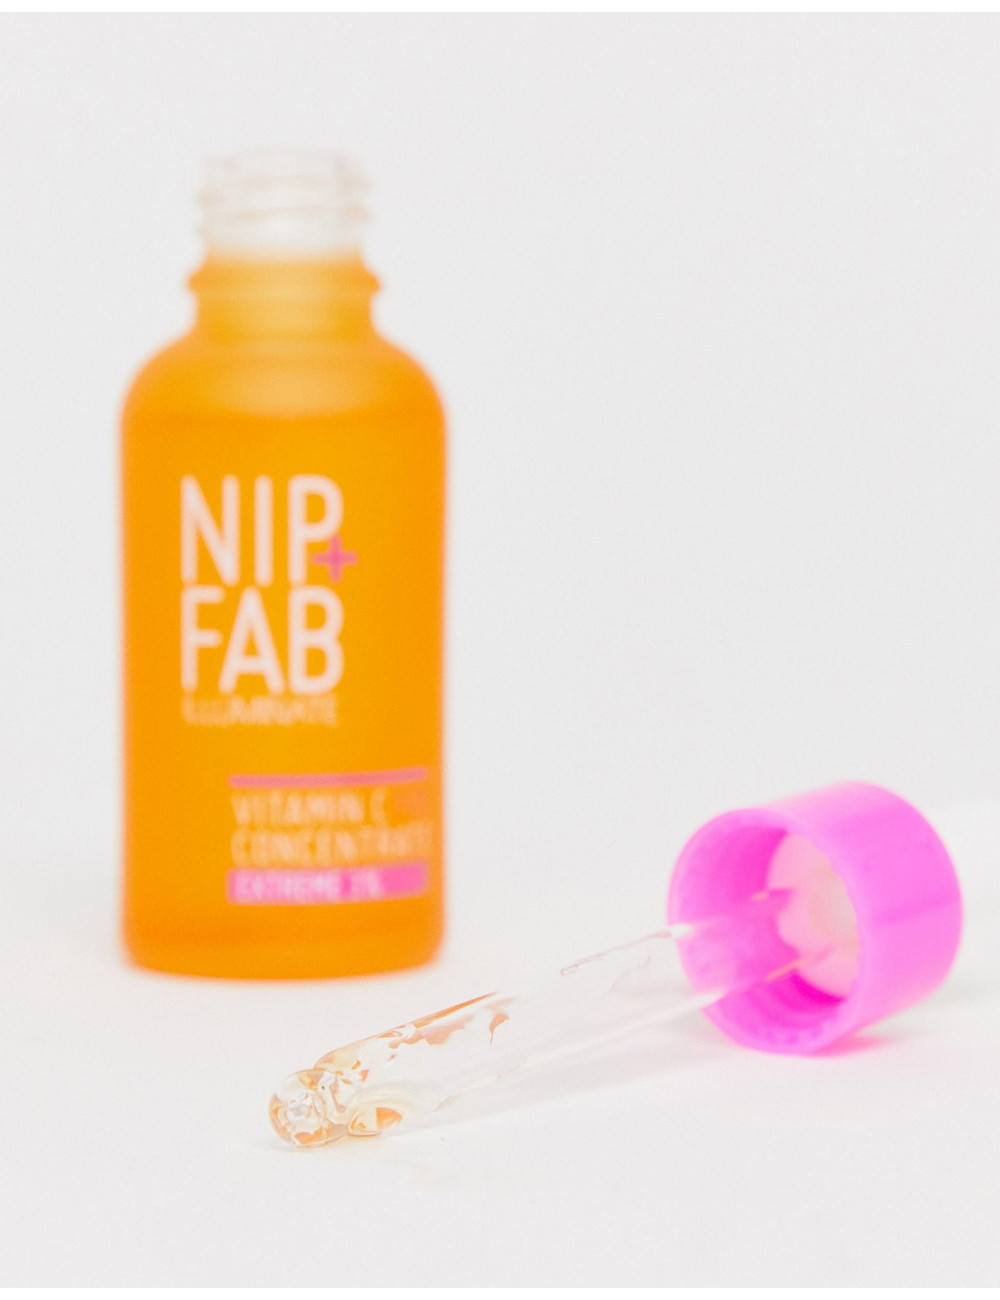 NIP+FAB Vitamin C Fix...